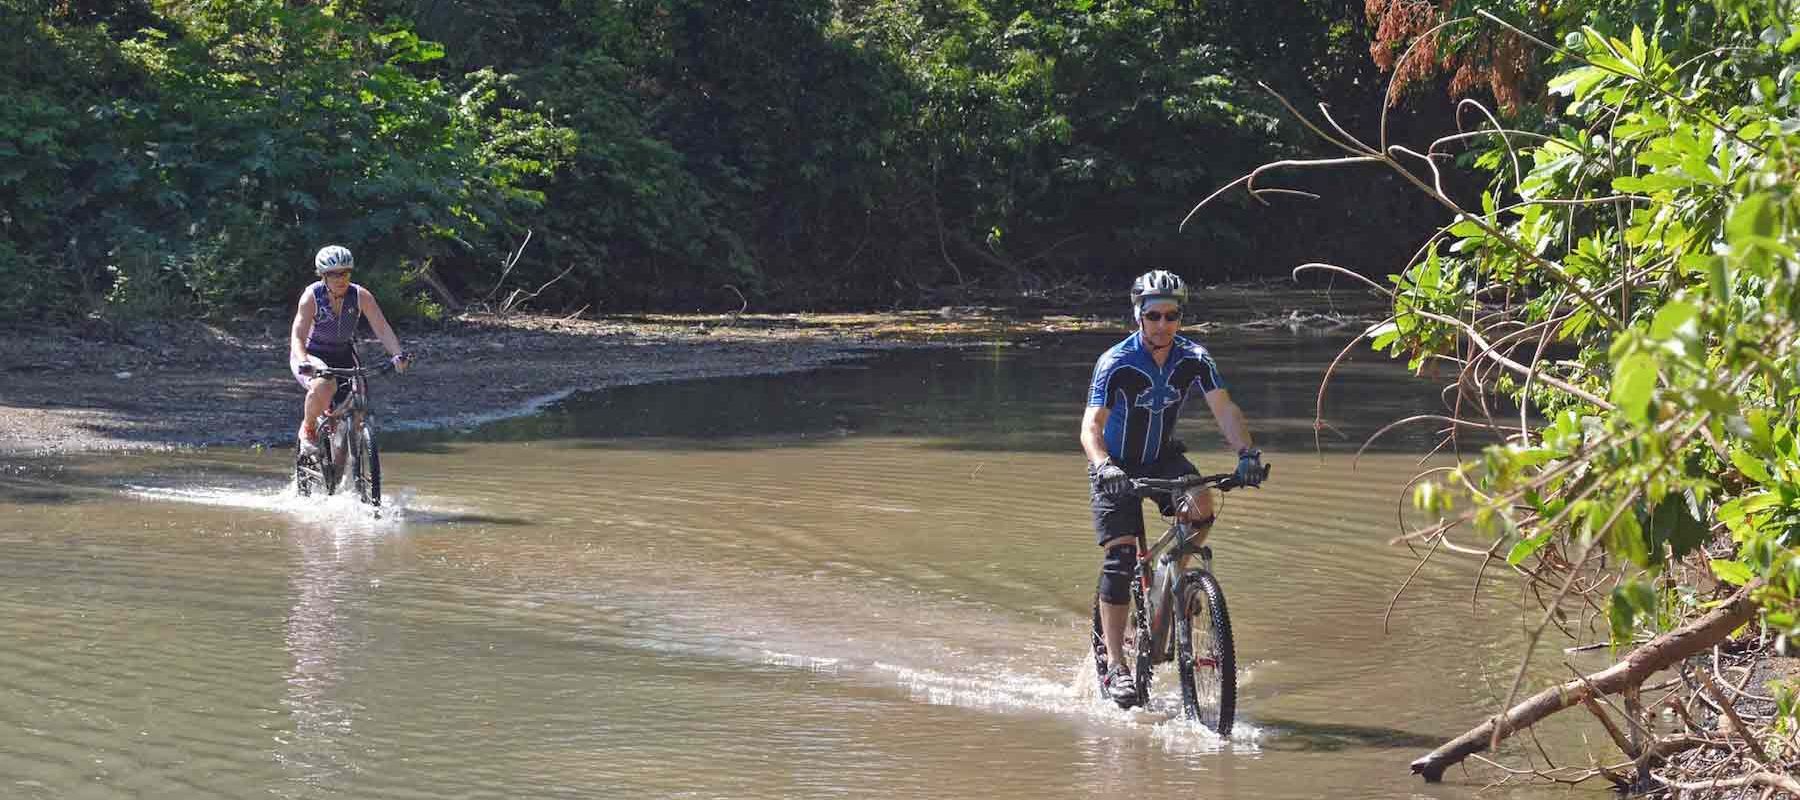 Biking through shallow lakes